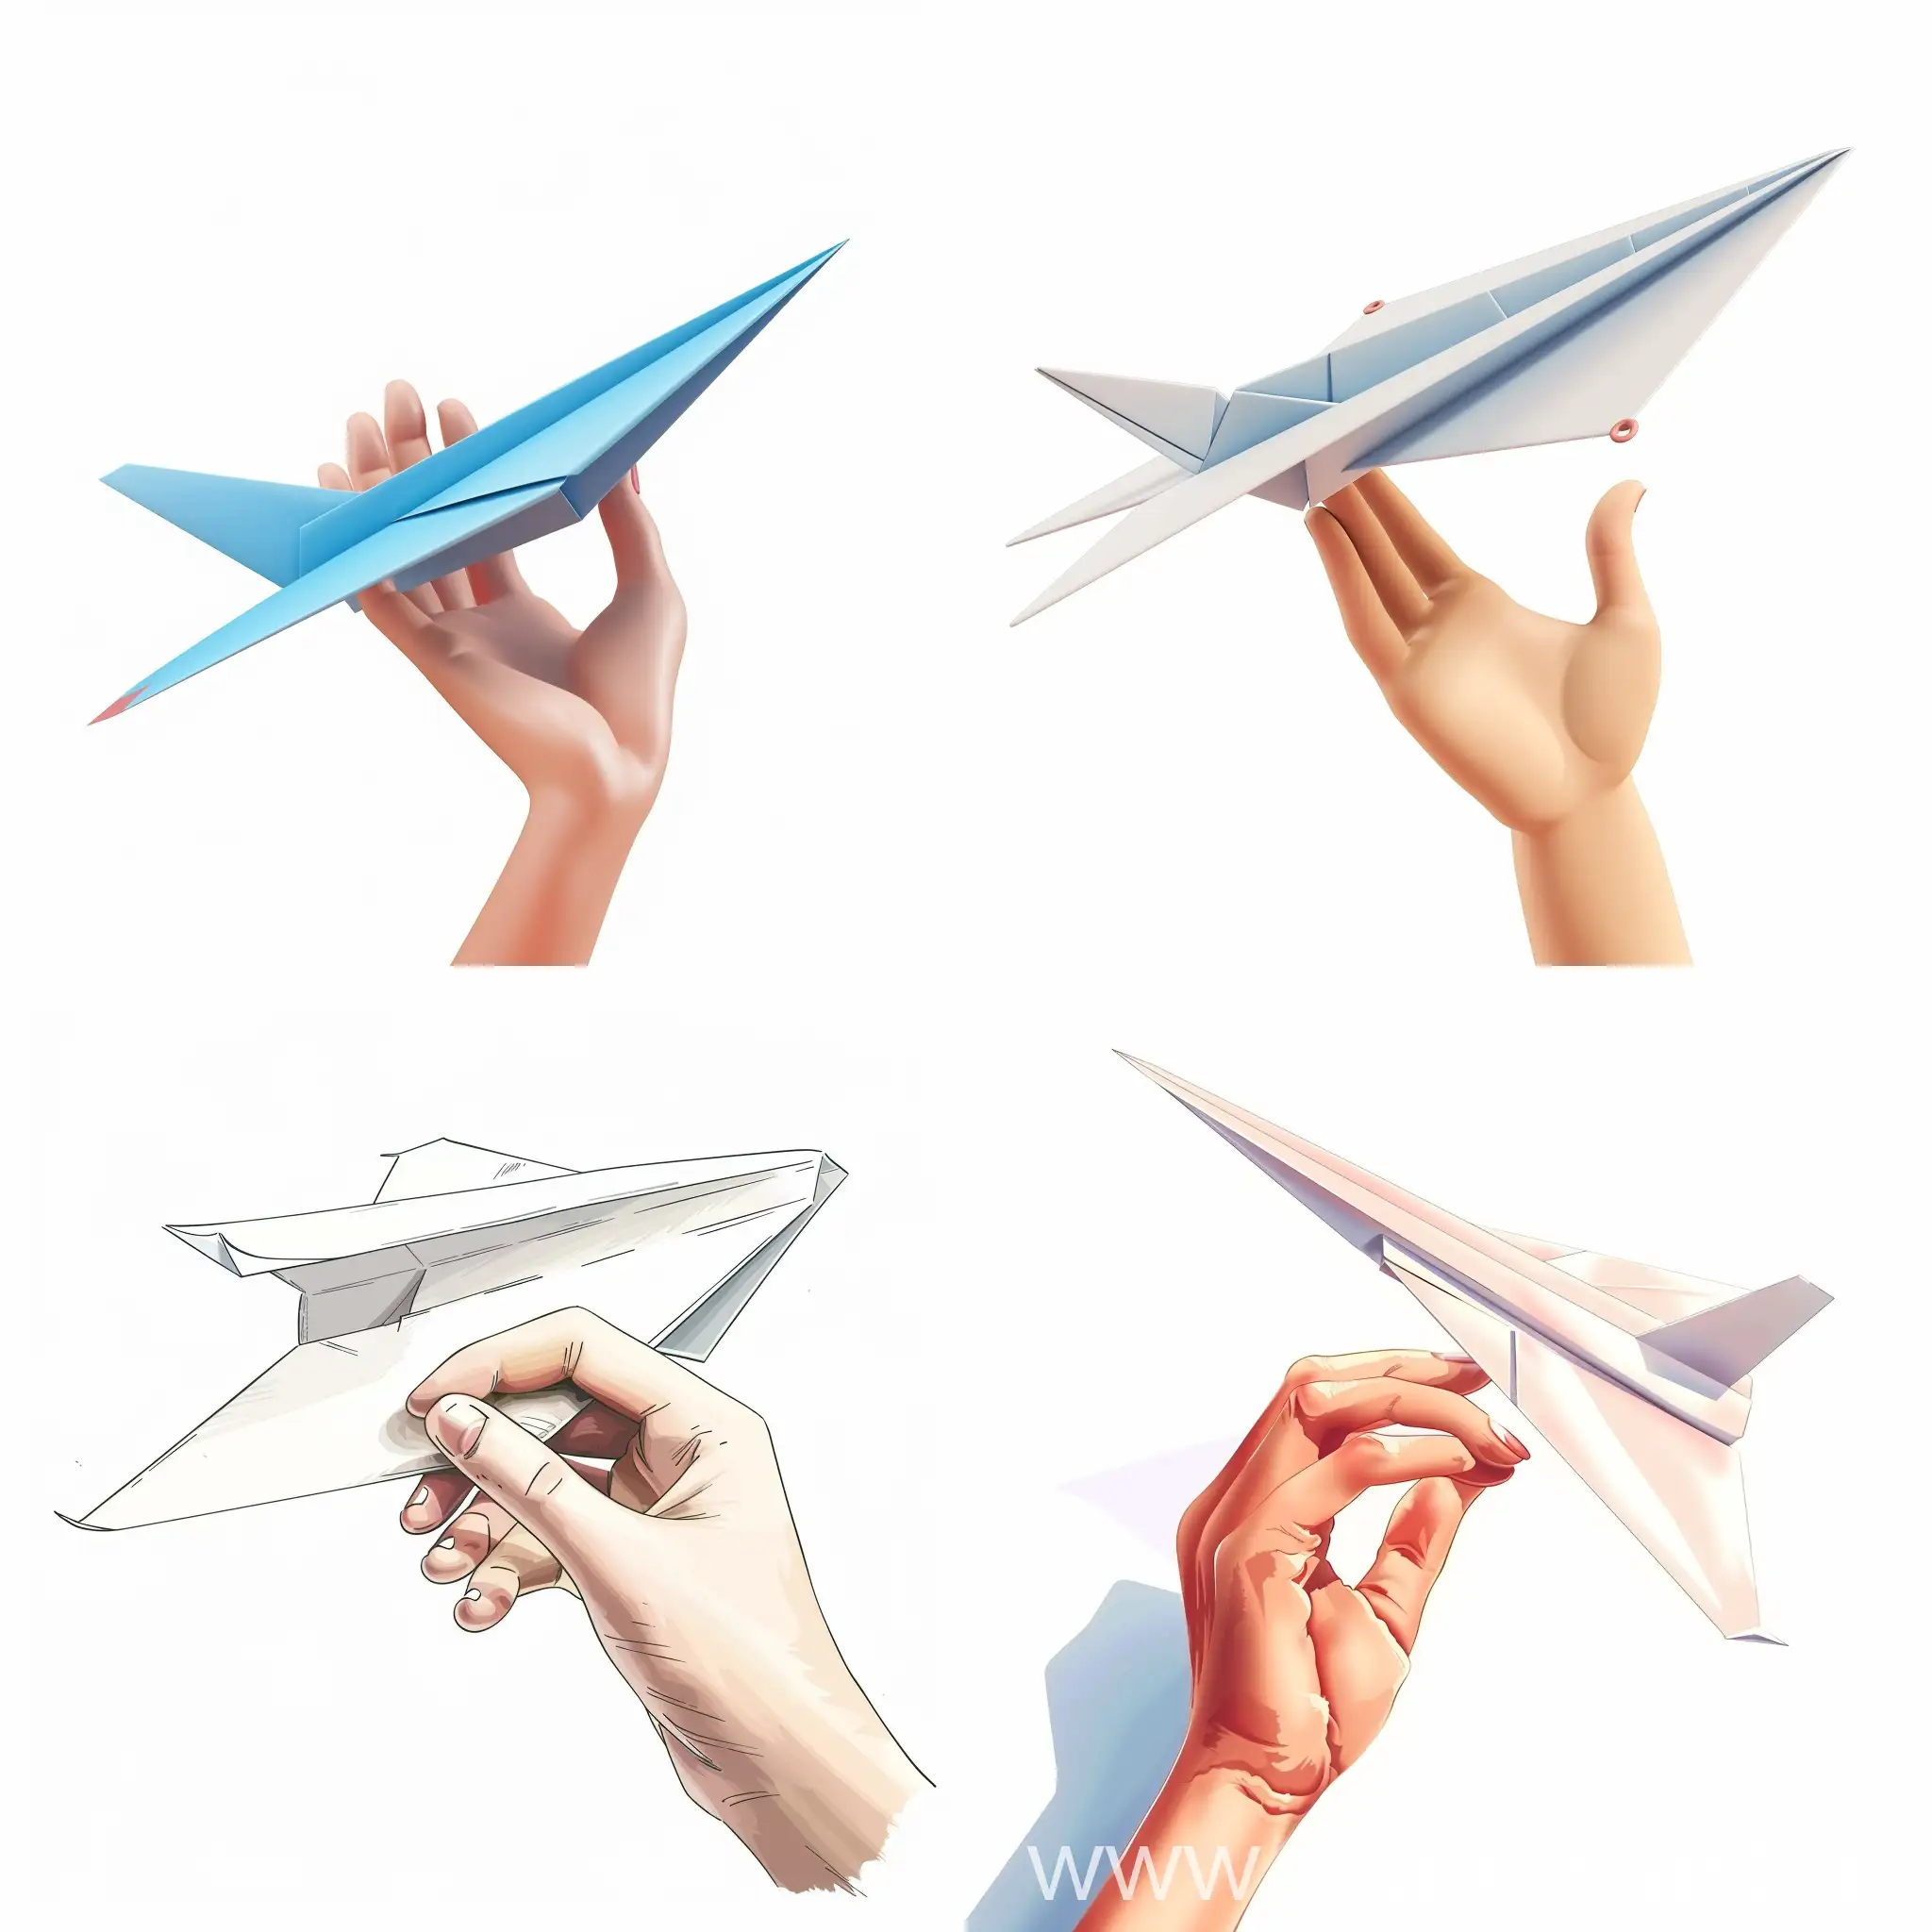 нарисуй руку с бумажным самолетиком в руке в 3d мультяшном стиле на белом фоне